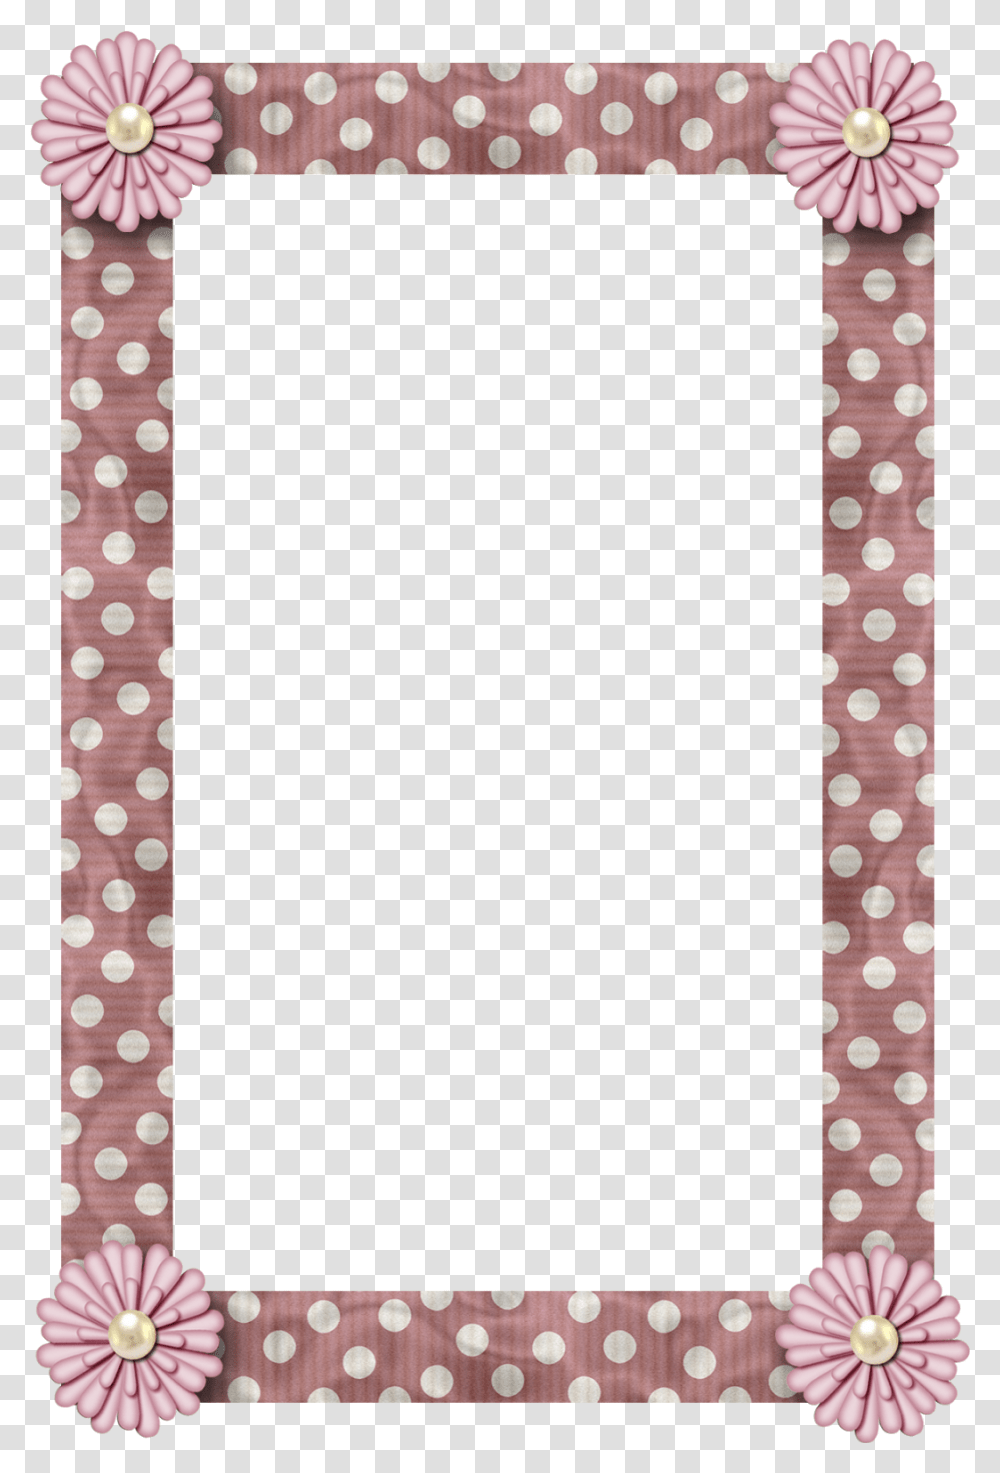 Label Frames Printable Border Design For Scrapbook, Texture, Polka Dot, Rug Transparent Png